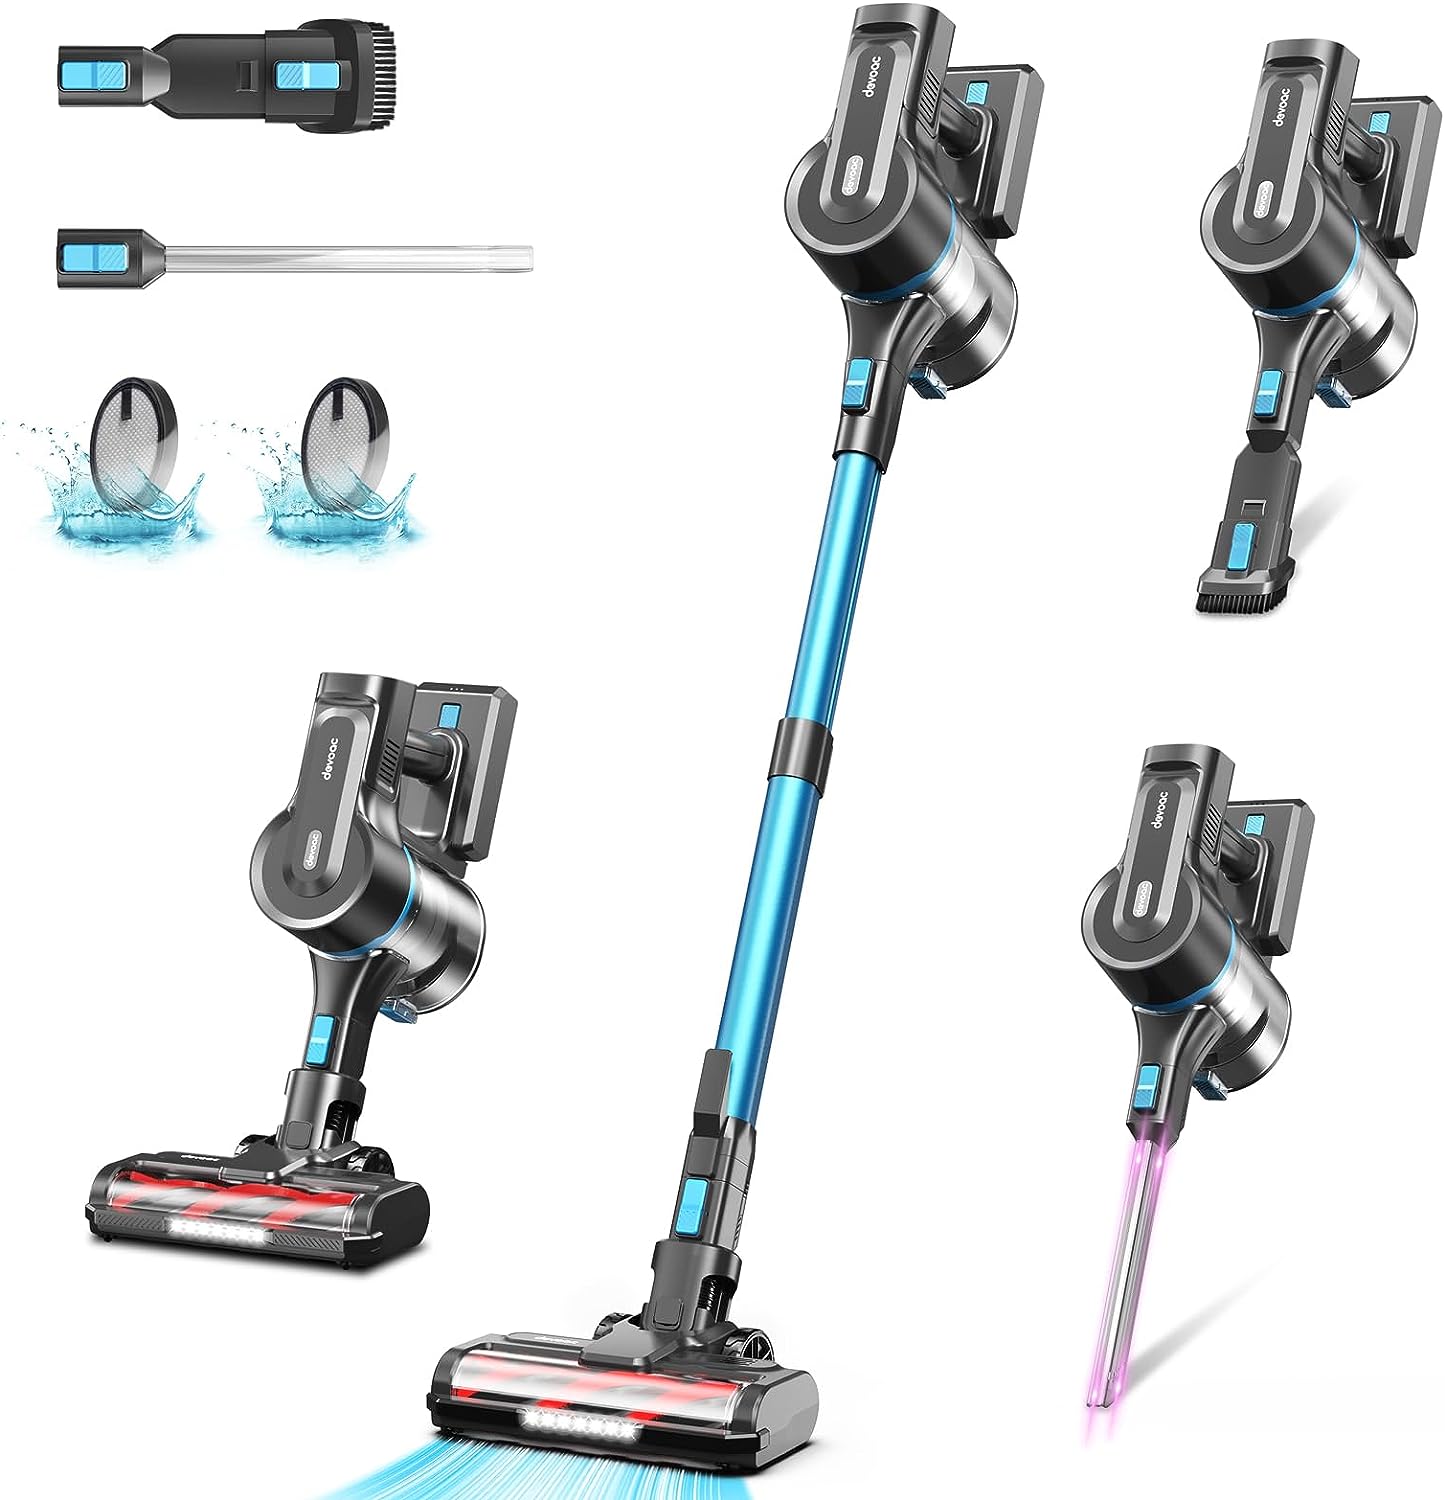 Handheld Vacuums: Portable vacuum, handheld vacuum, handheld shop vacuum